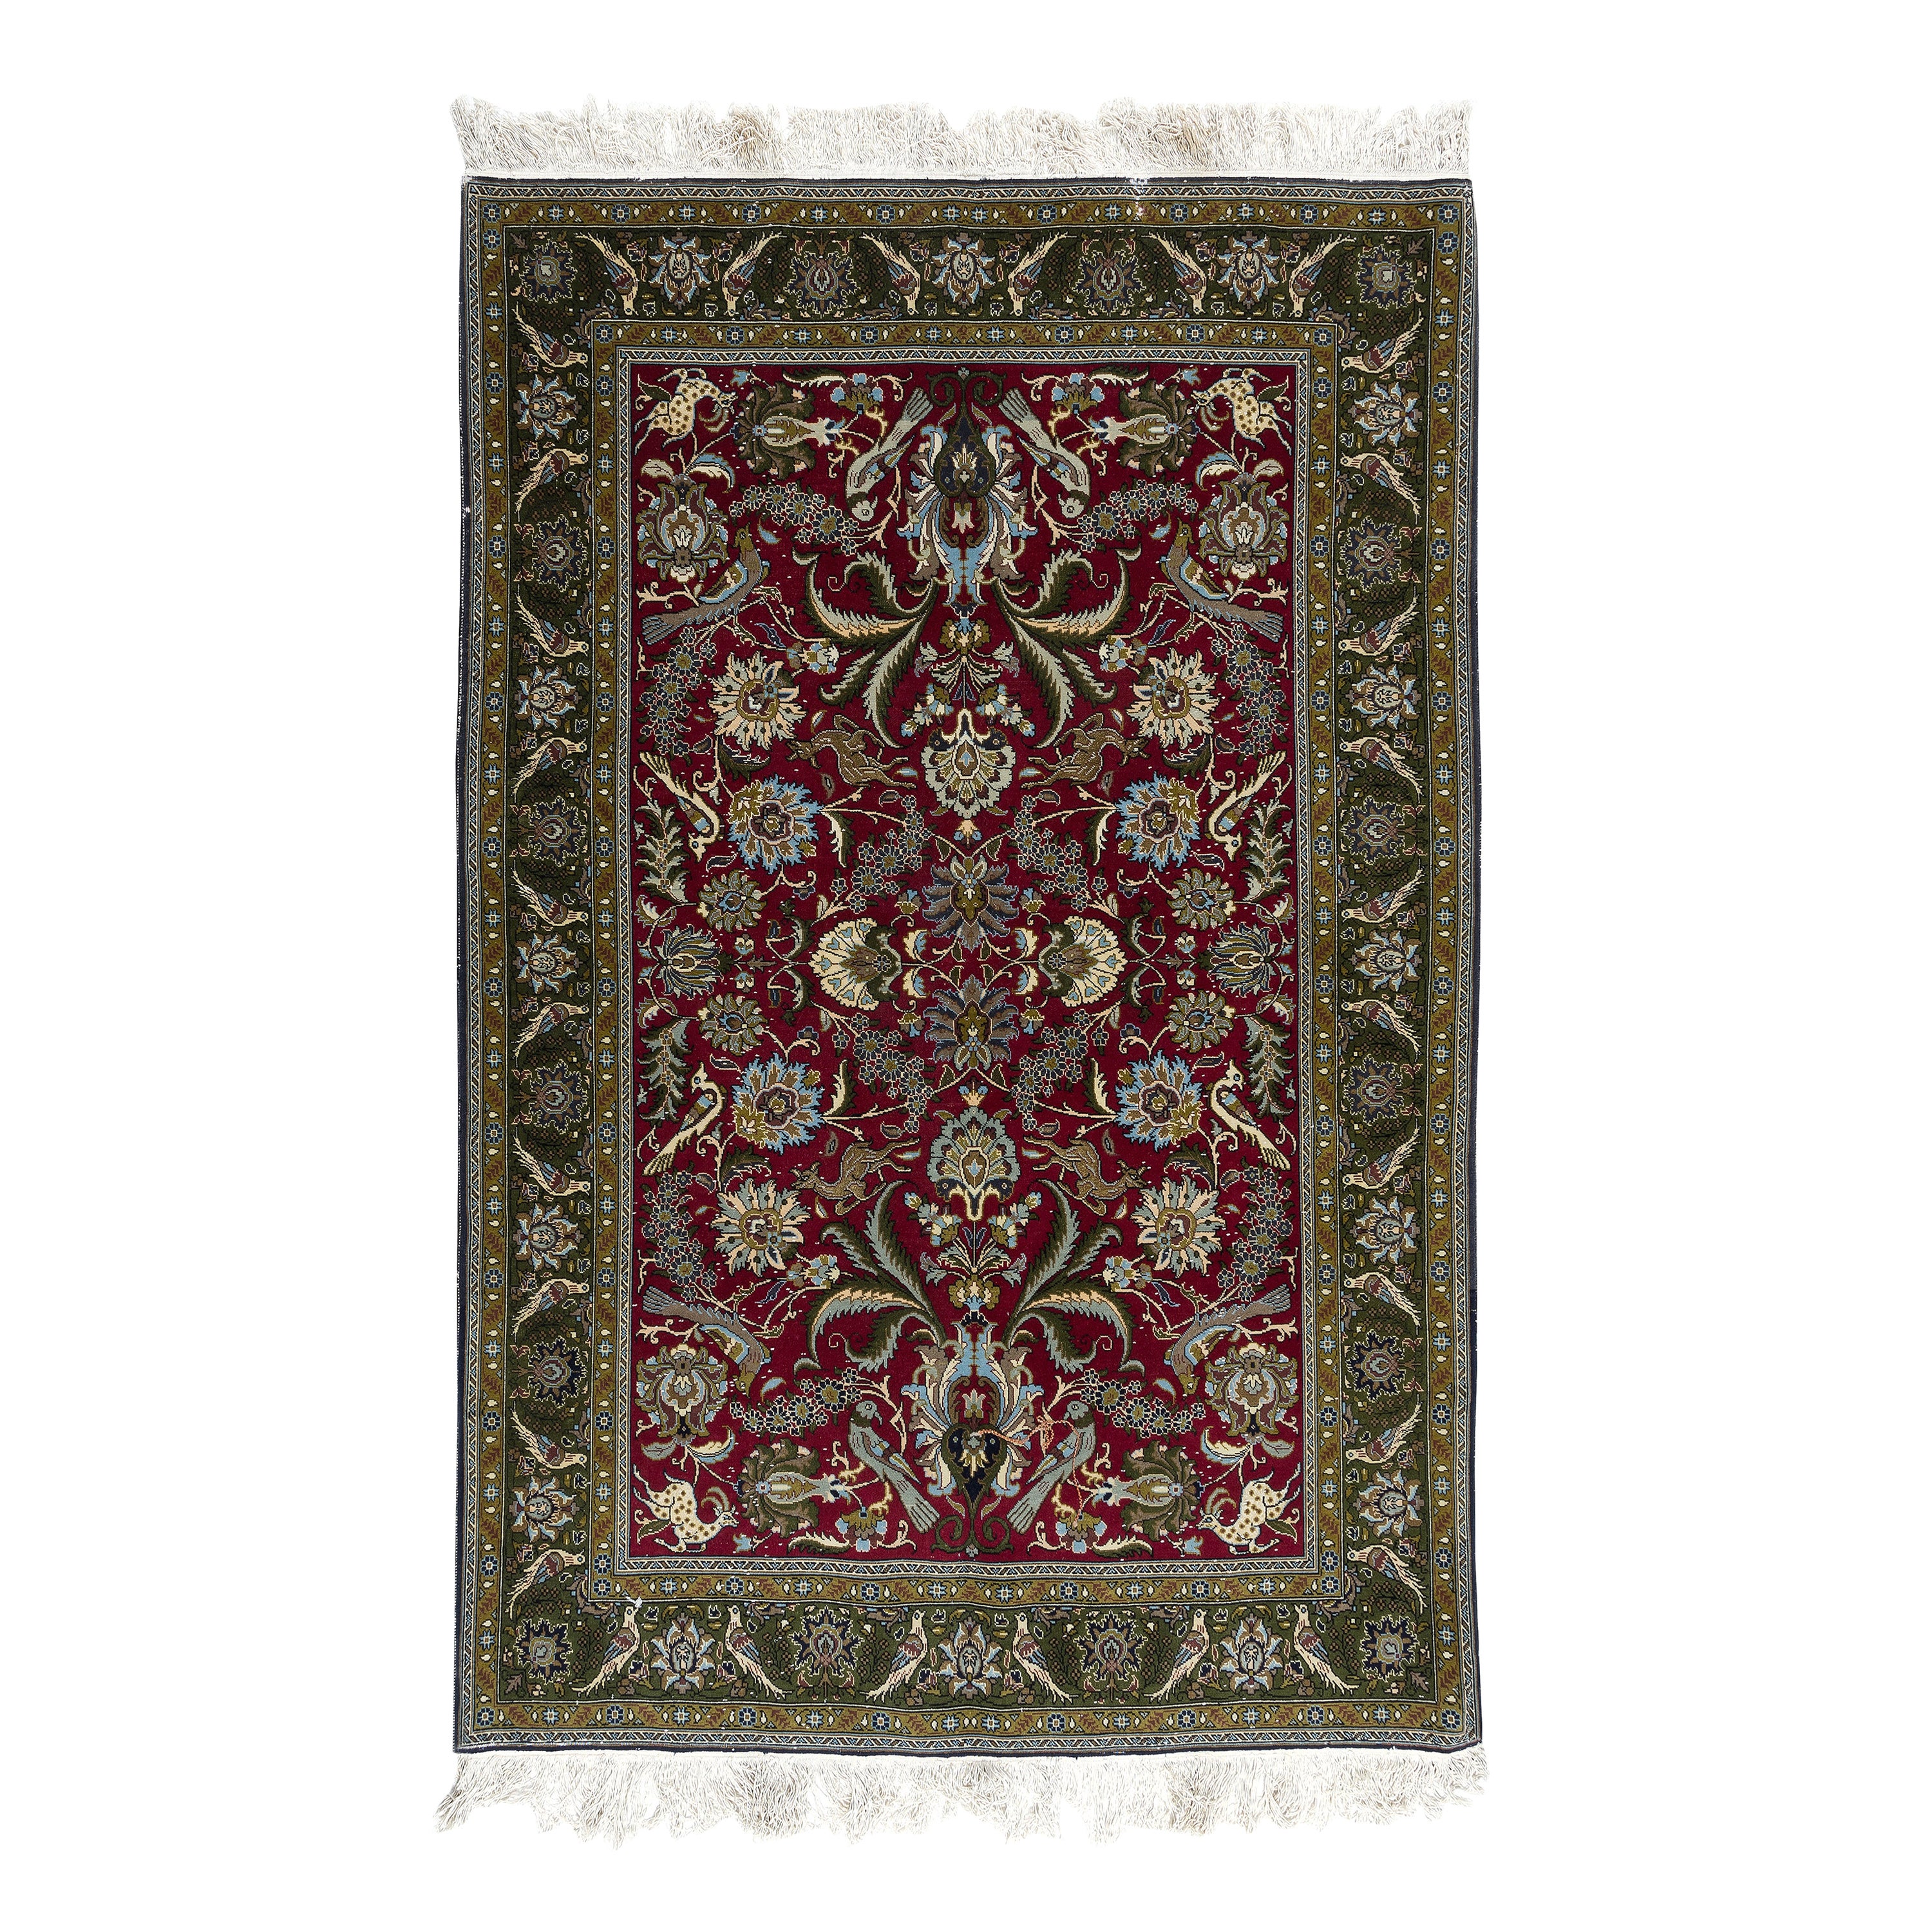 4,6x7 Ft Handgeknüpfter türkischer Teppich in Rot & Grün mit floralem botanischem Design